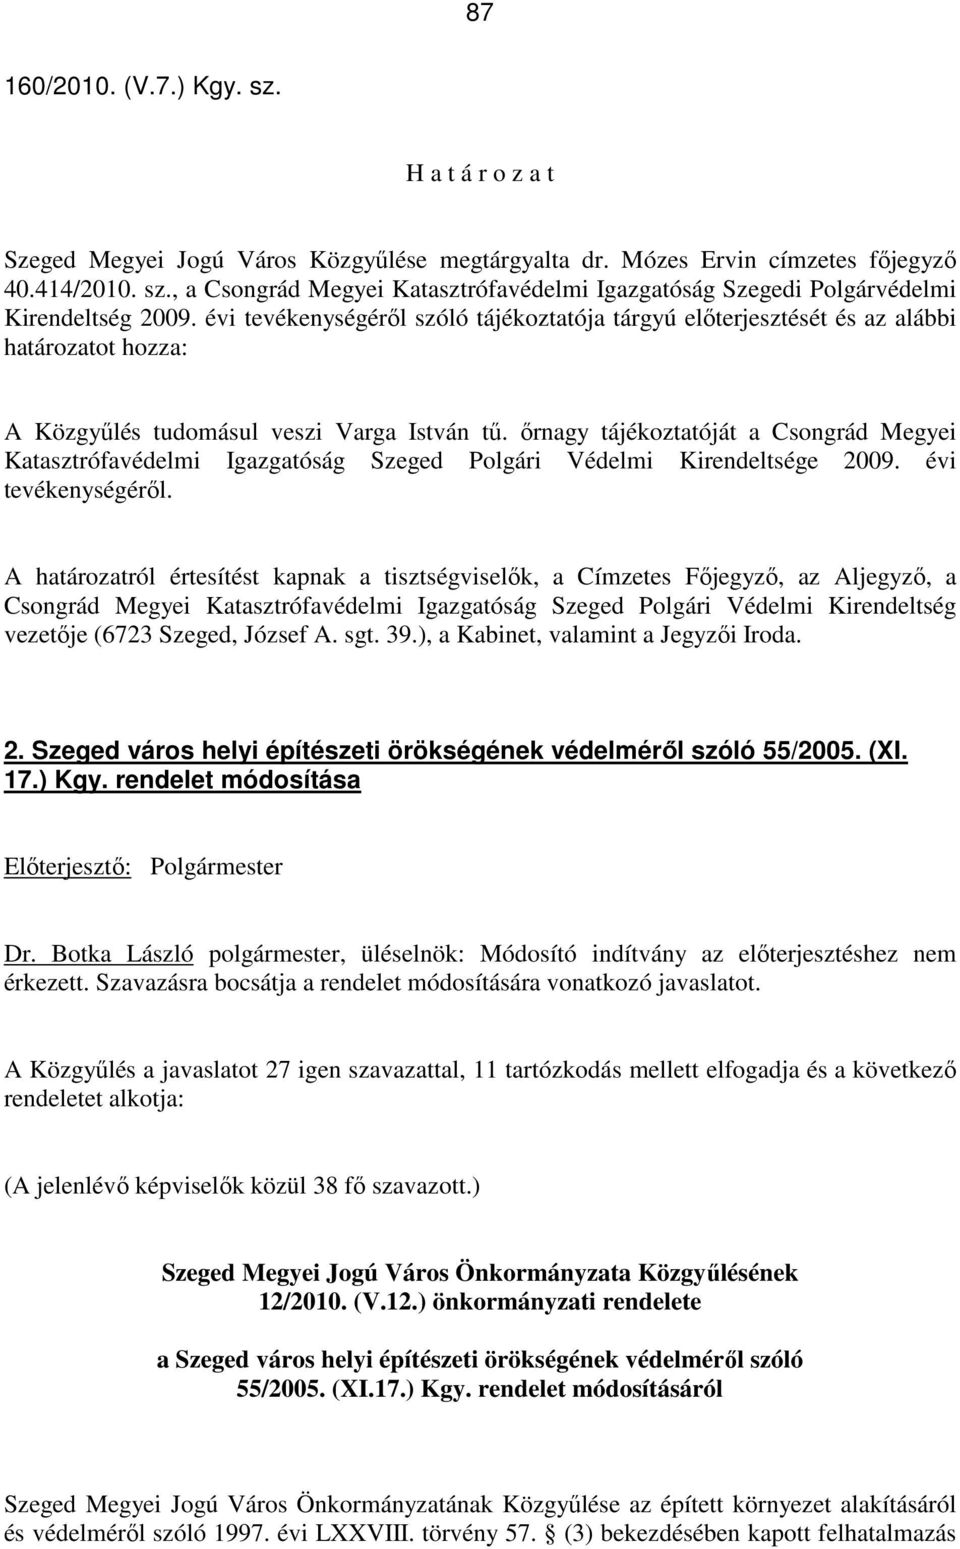 ırnagy tájékoztatóját a Csongrád Megyei Katasztrófavédelmi Igazgatóság Szeged Polgári Védelmi Kirendeltsége 2009. évi tevékenységérıl.